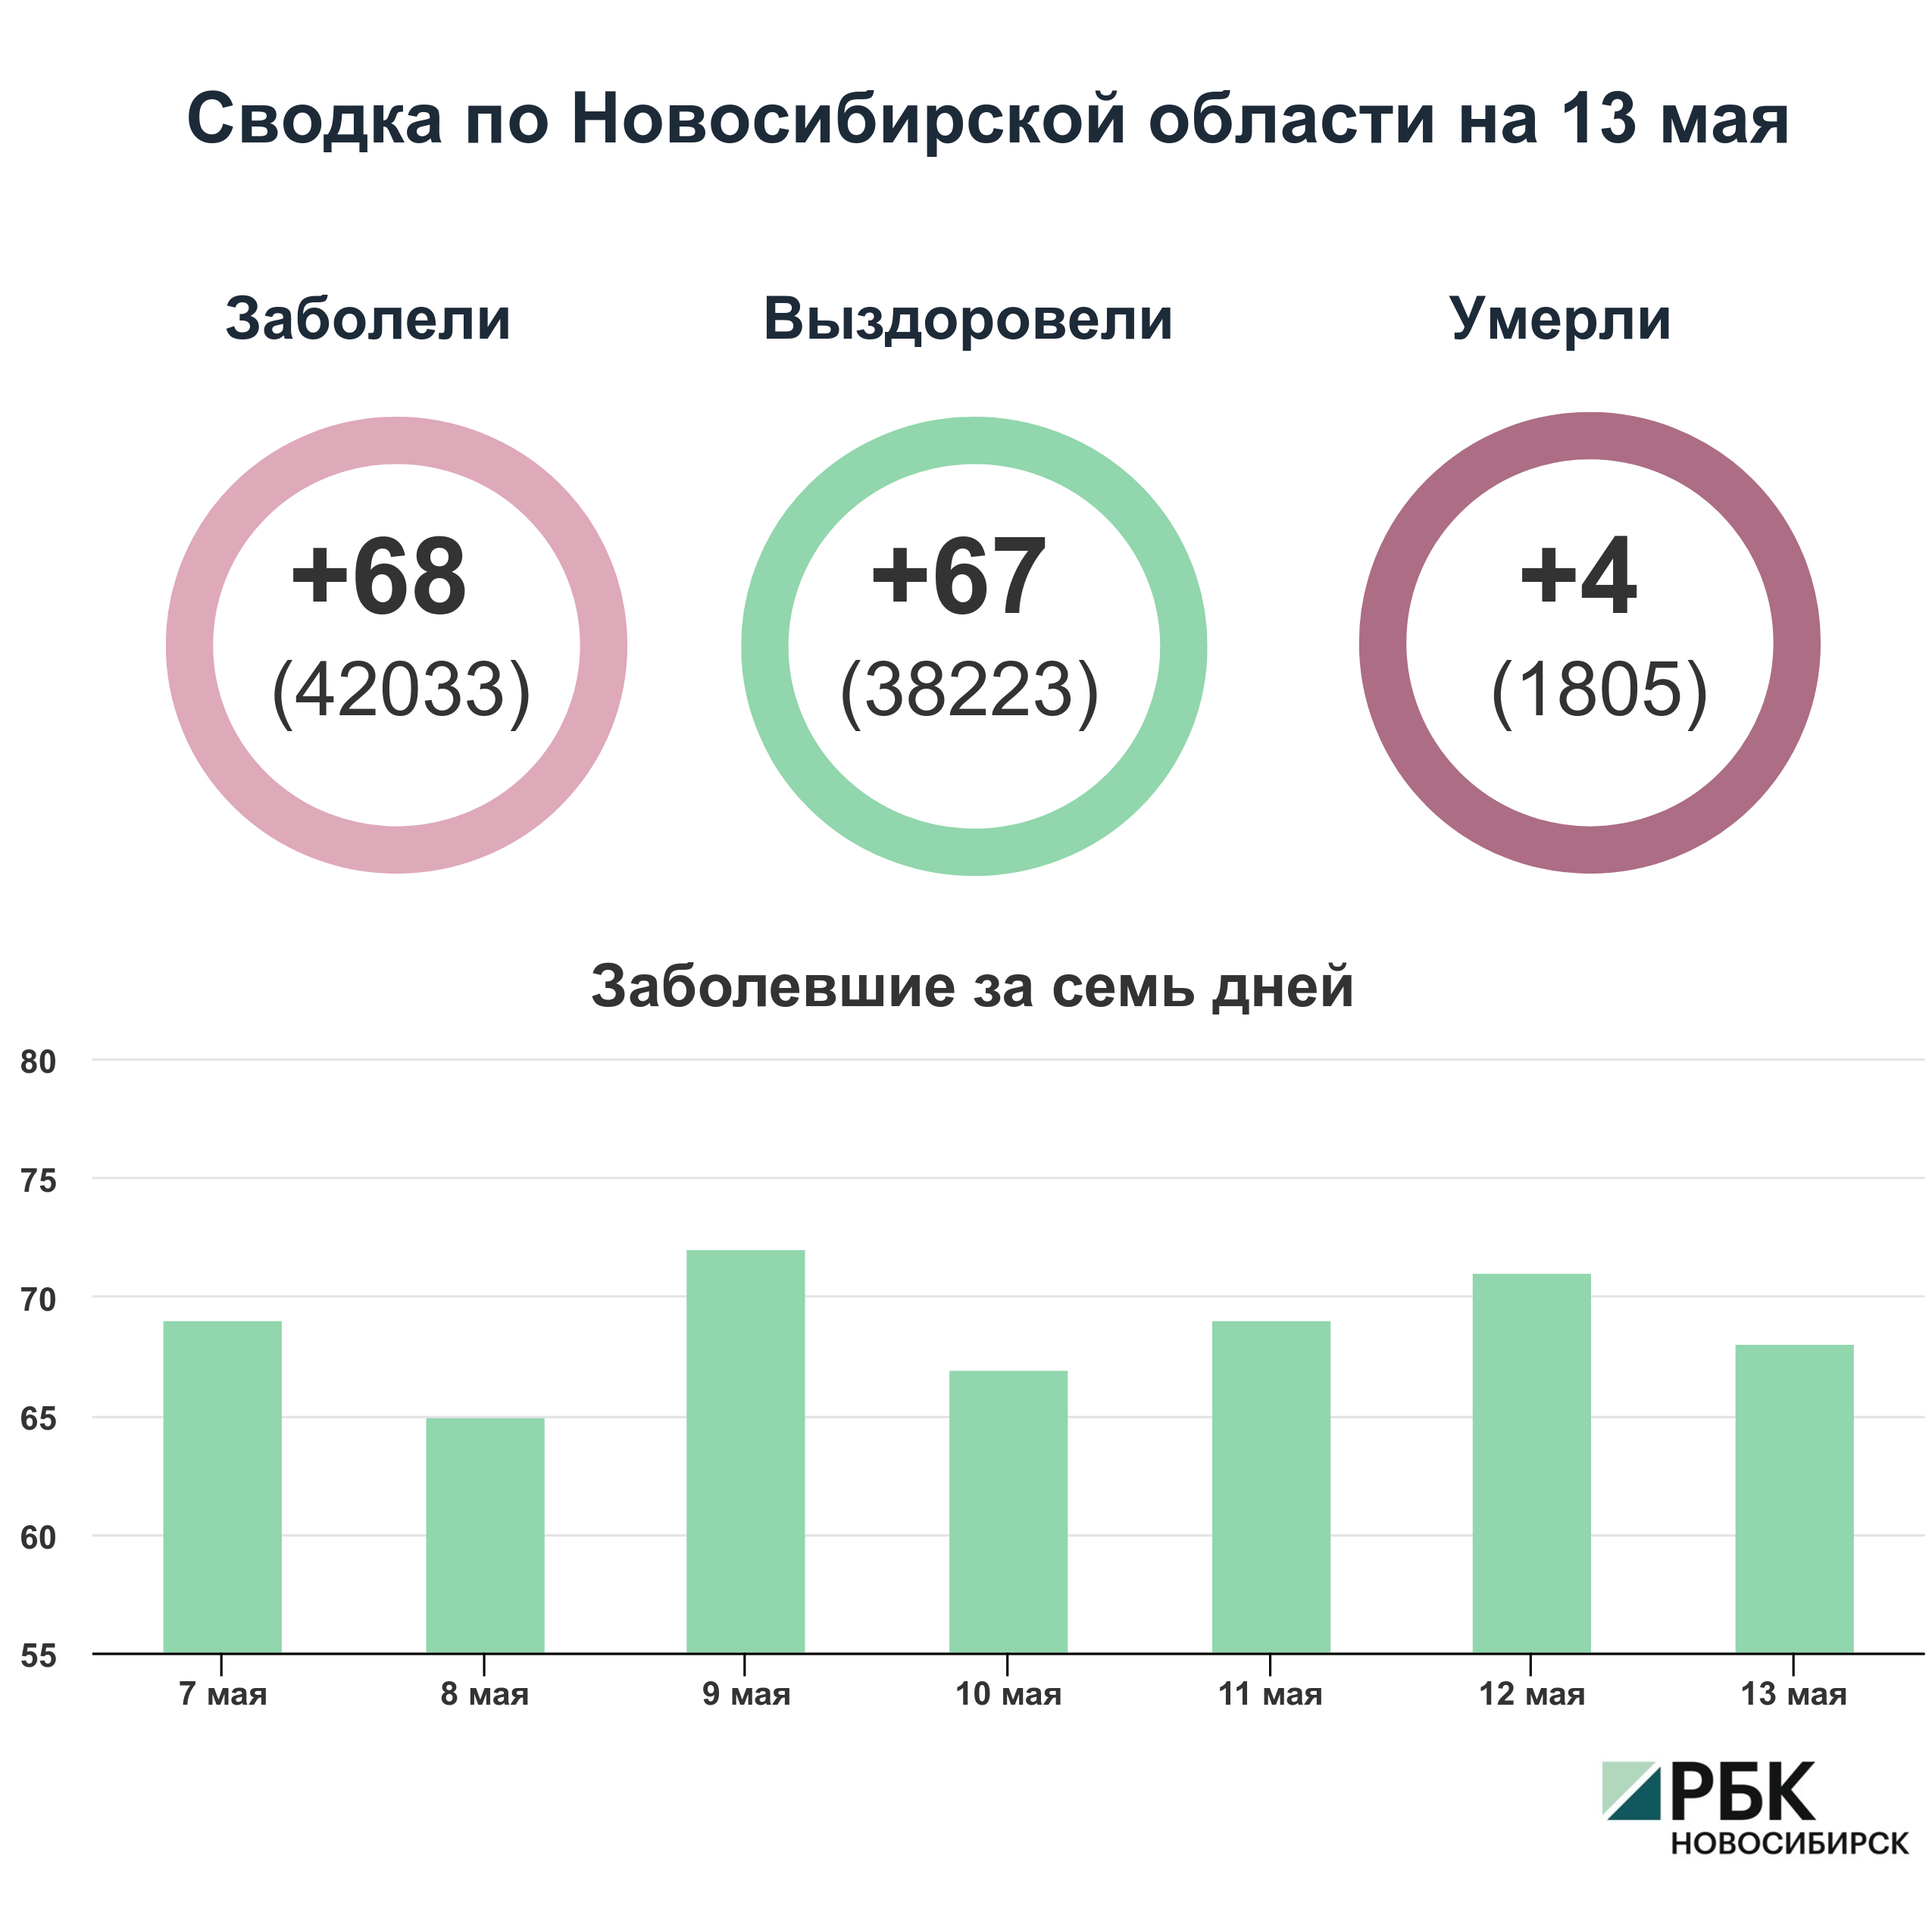 Коронавирус в Новосибирске: сводка на 13 мая